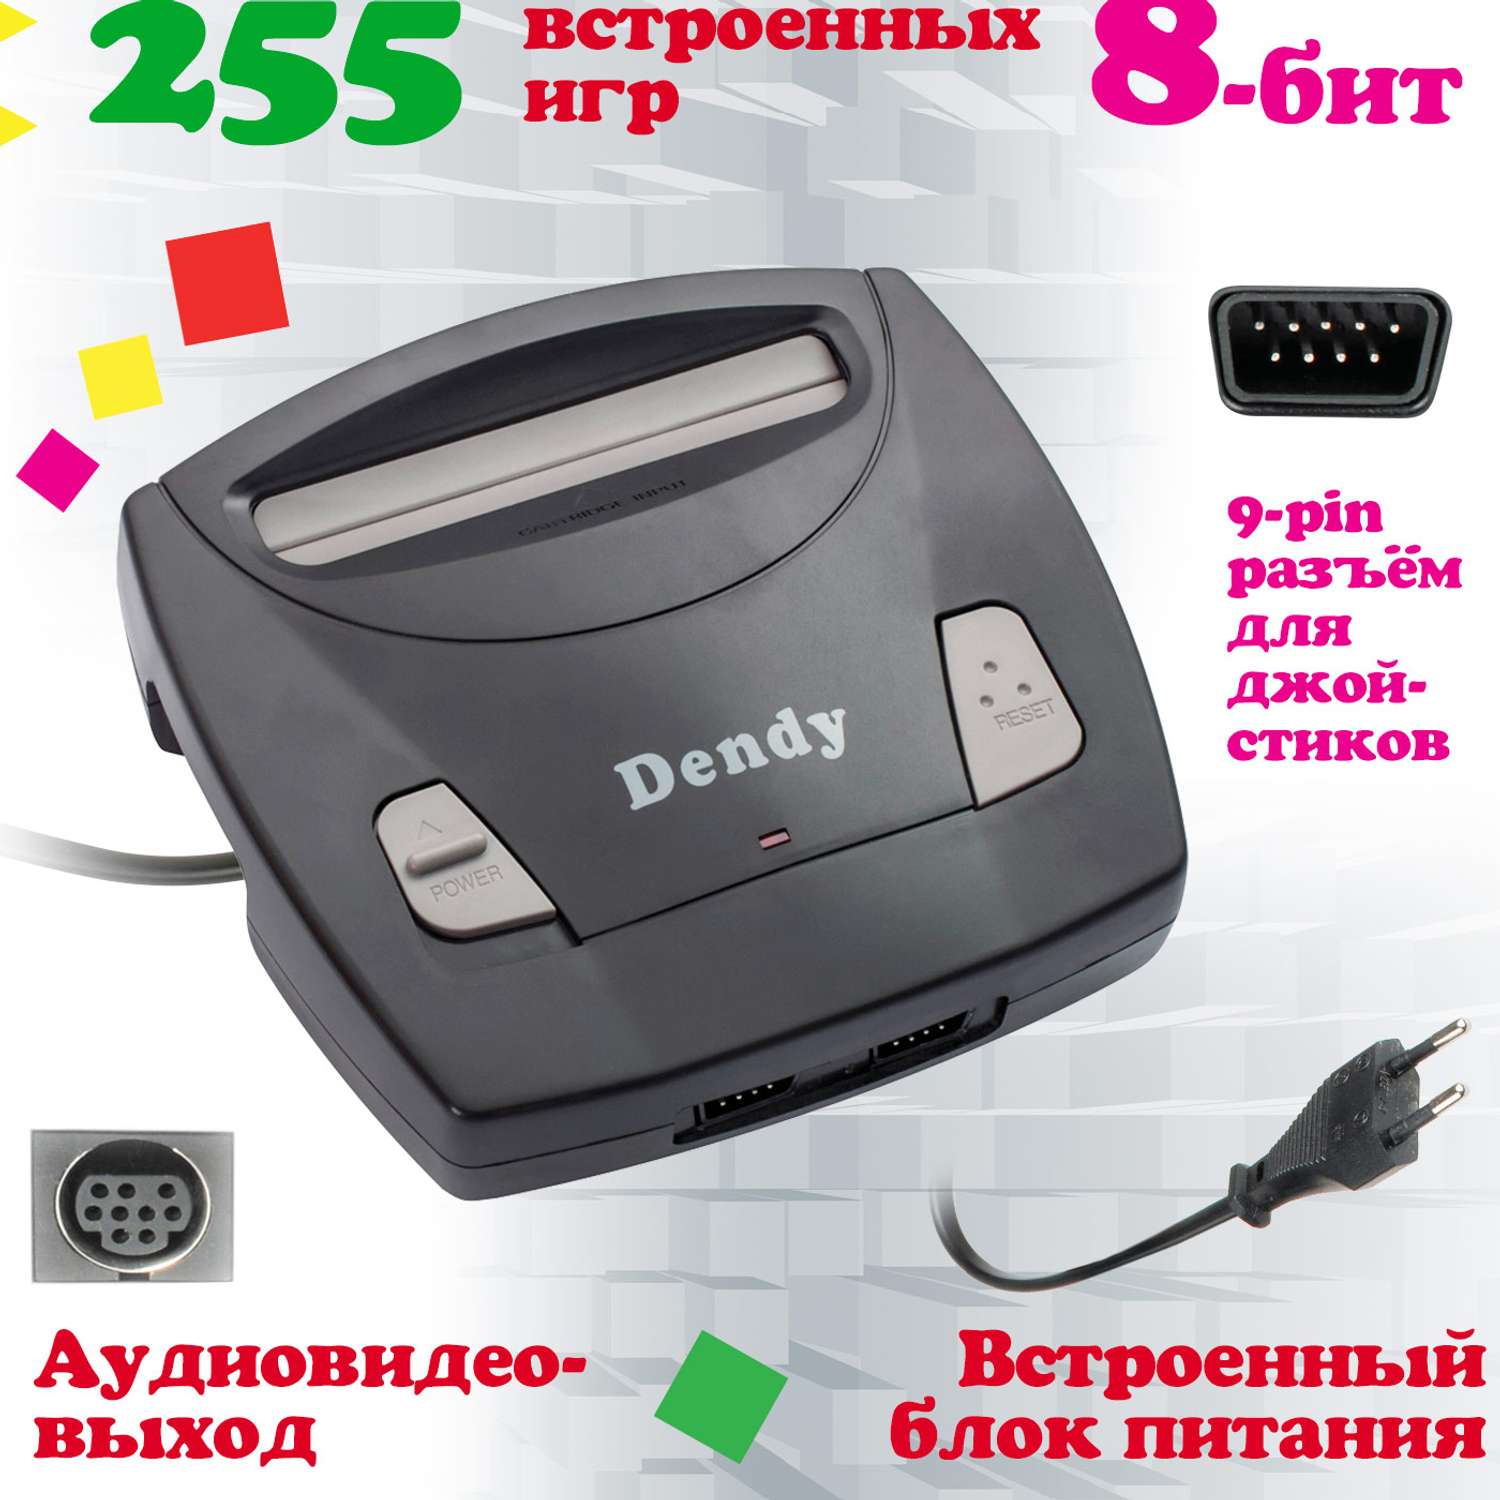 Игровая приставка Dendy Classic 255 игр (8-бит) - фото 3